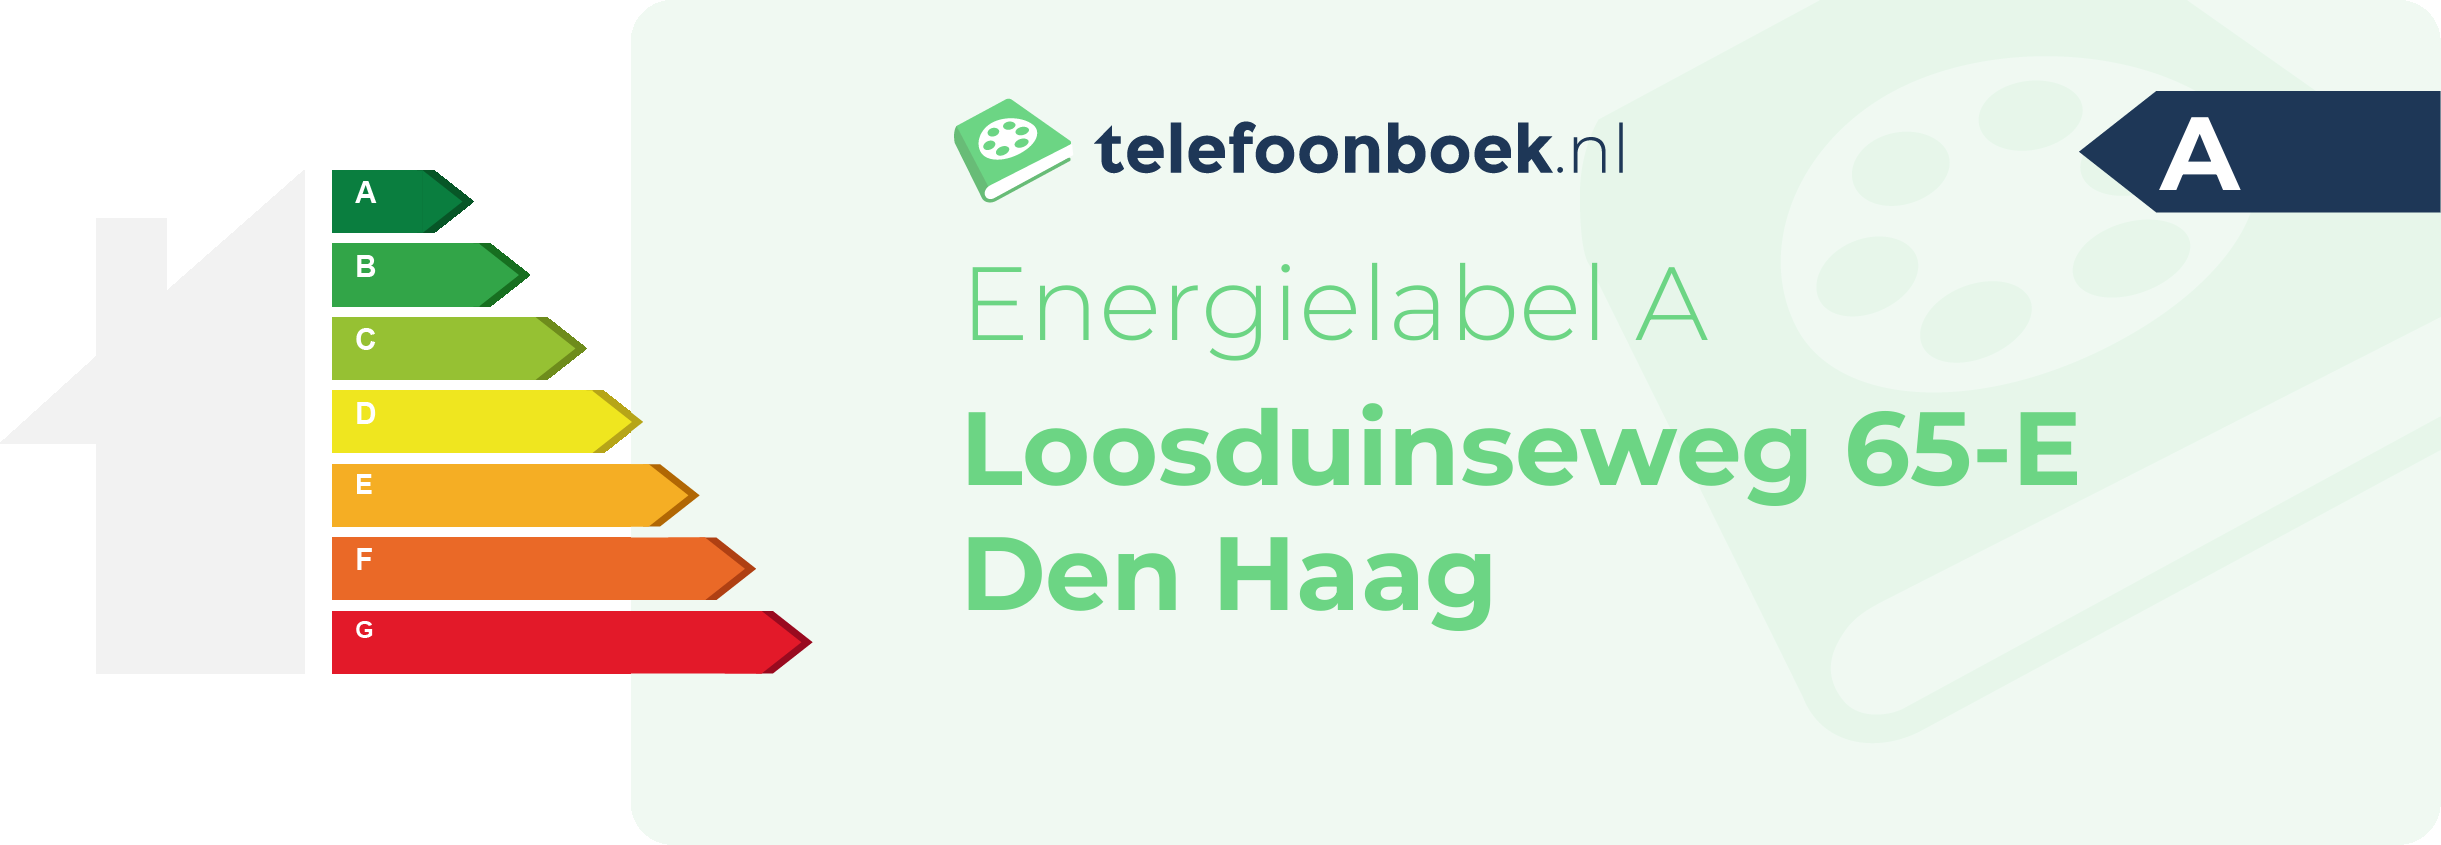 Energielabel Loosduinseweg 65-E Den Haag